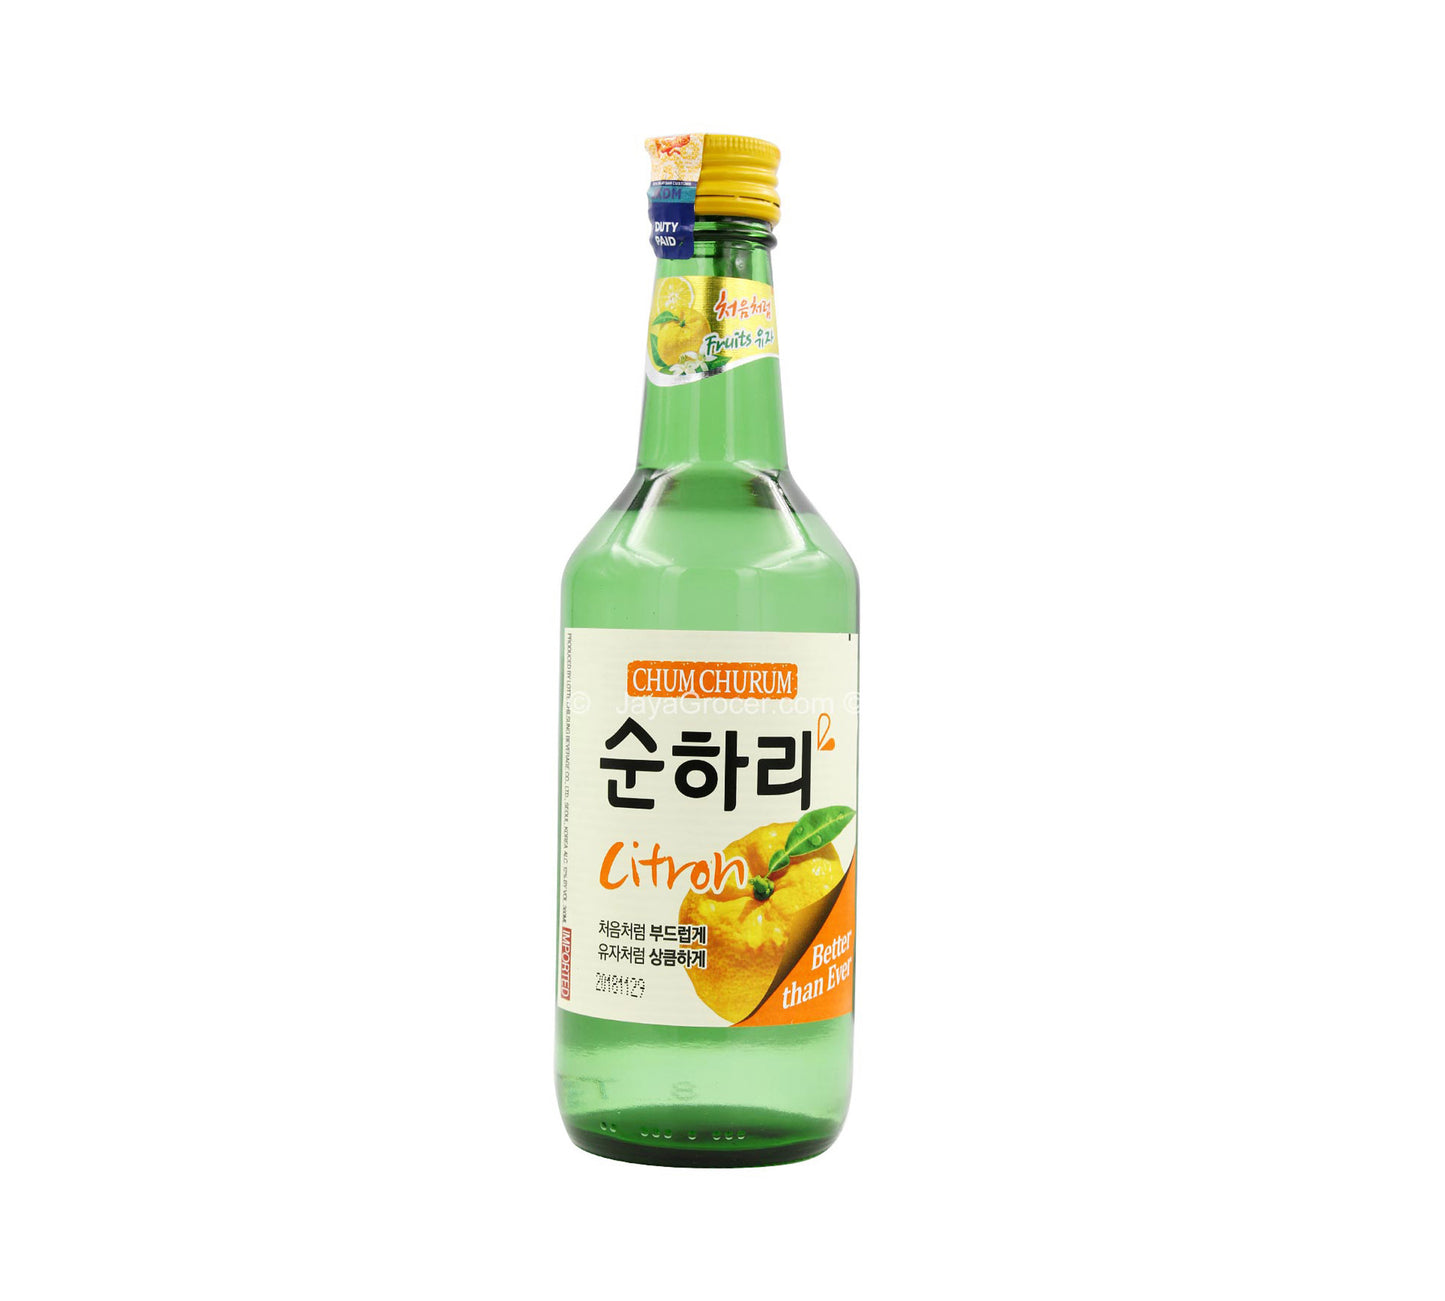 Lotte Chum Churum Soju Citron (Yuzu) Aroma 12% (360 ml)